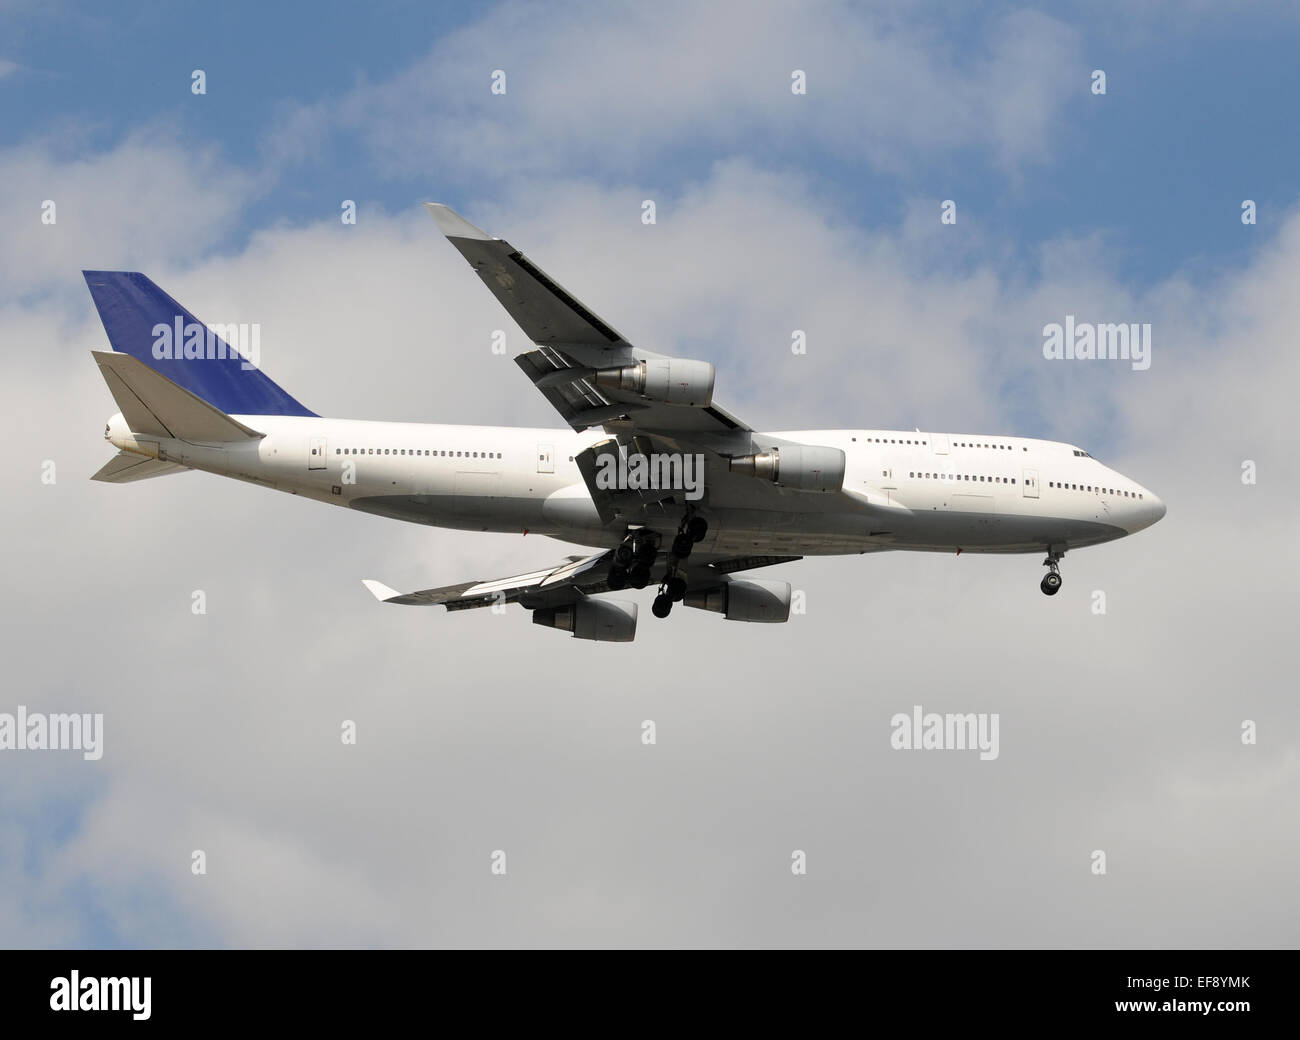 Cuerpo ancho moderno avión de pasajeros antes de aterrizar aviones Boeing 747 Foto de stock